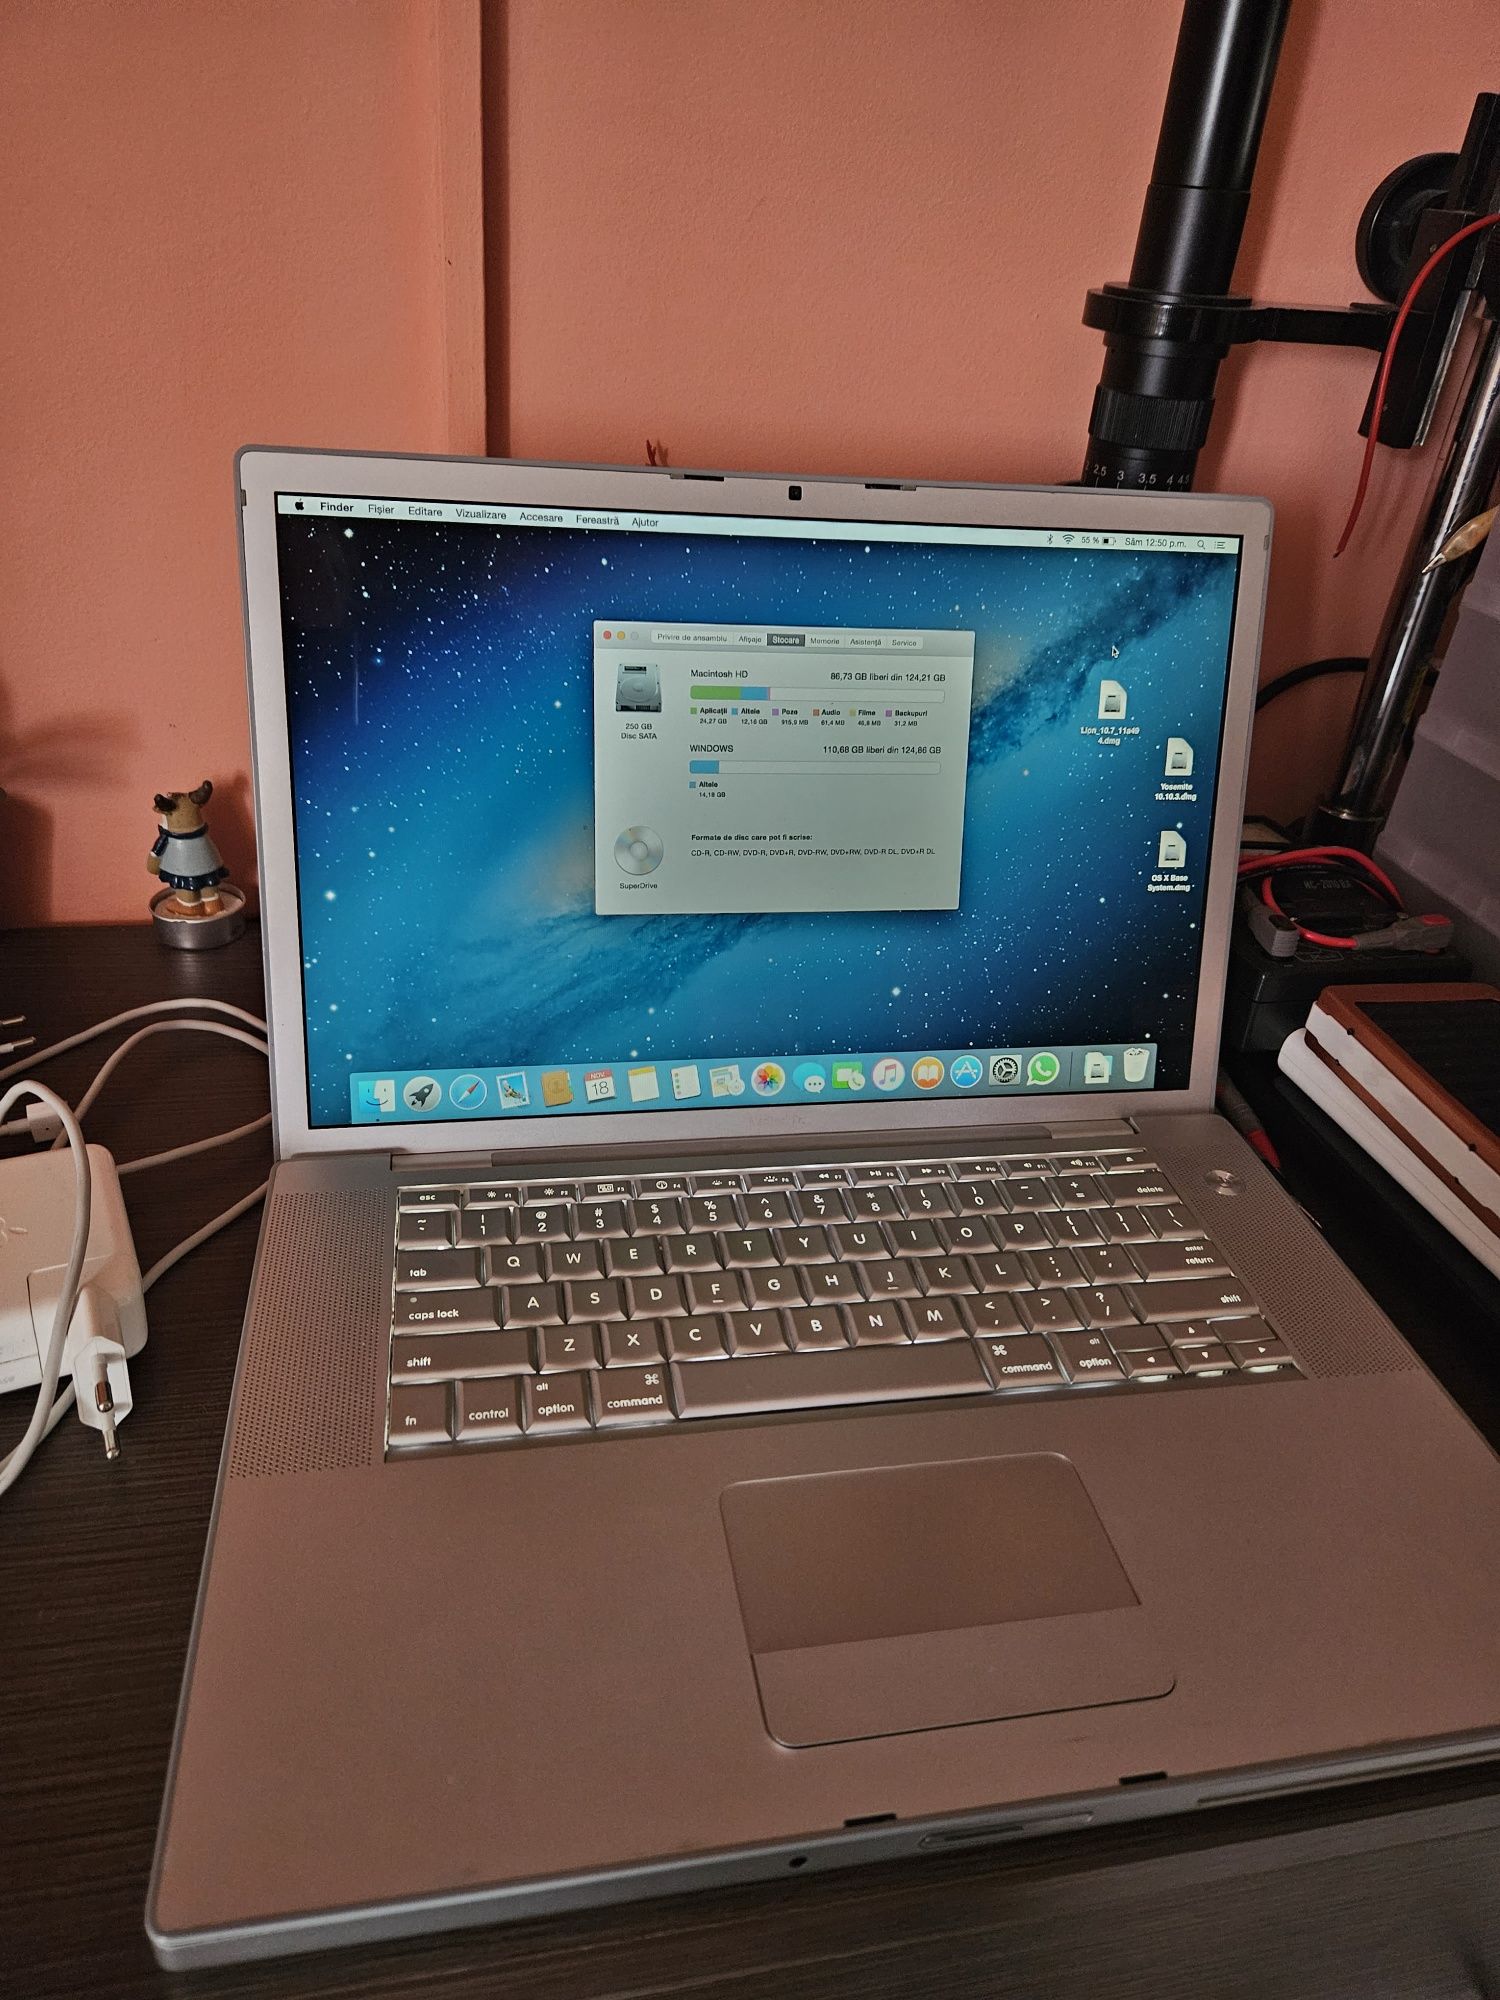 MacBook pro model a1260